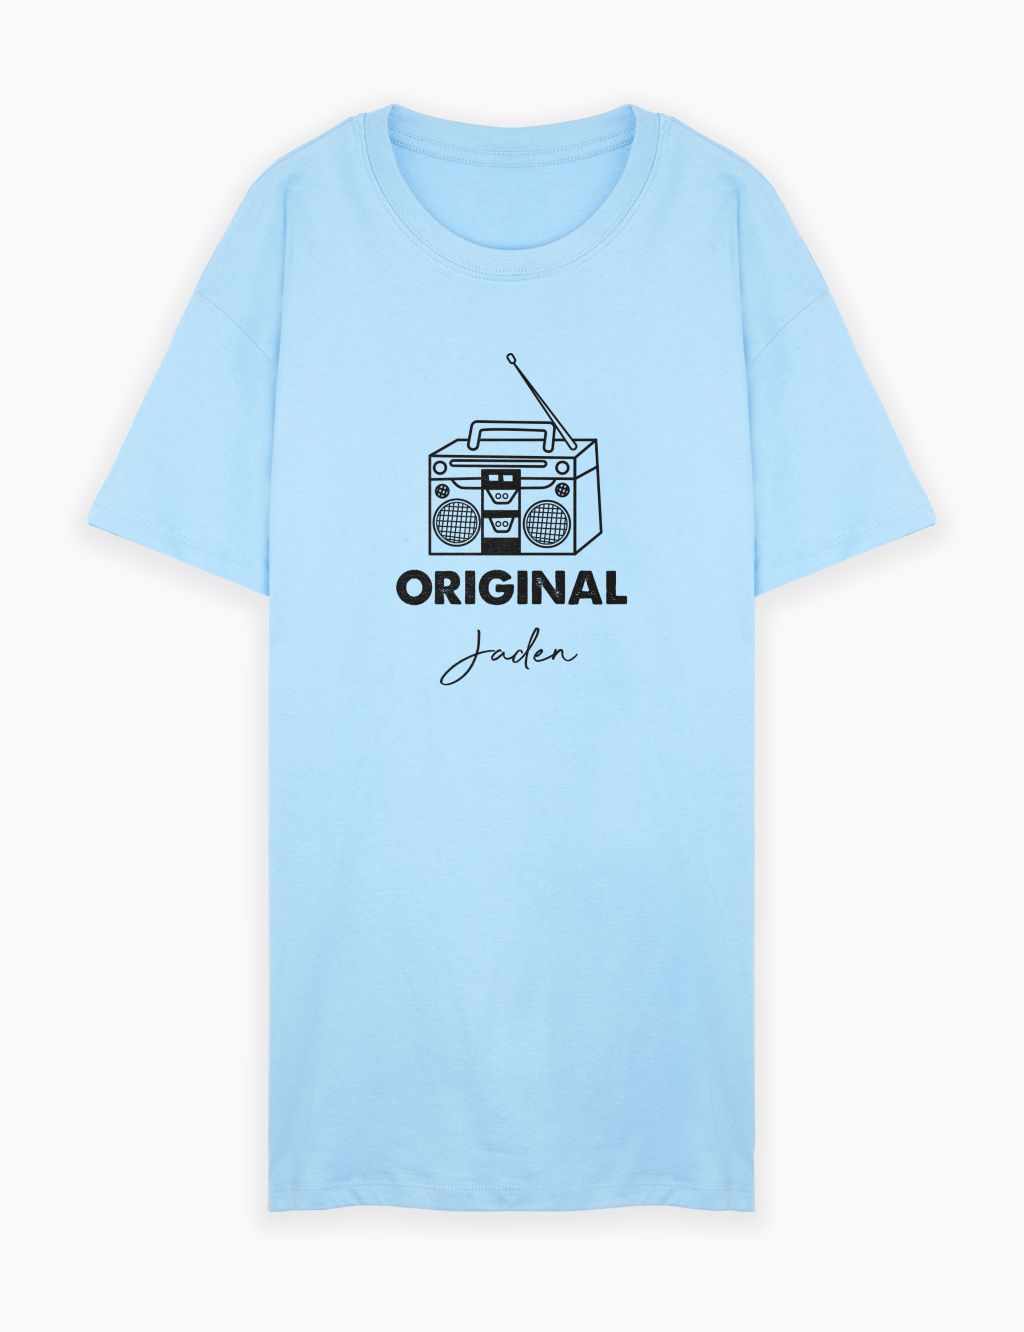 Personalised Original T-Shirt for Men 3 of 3